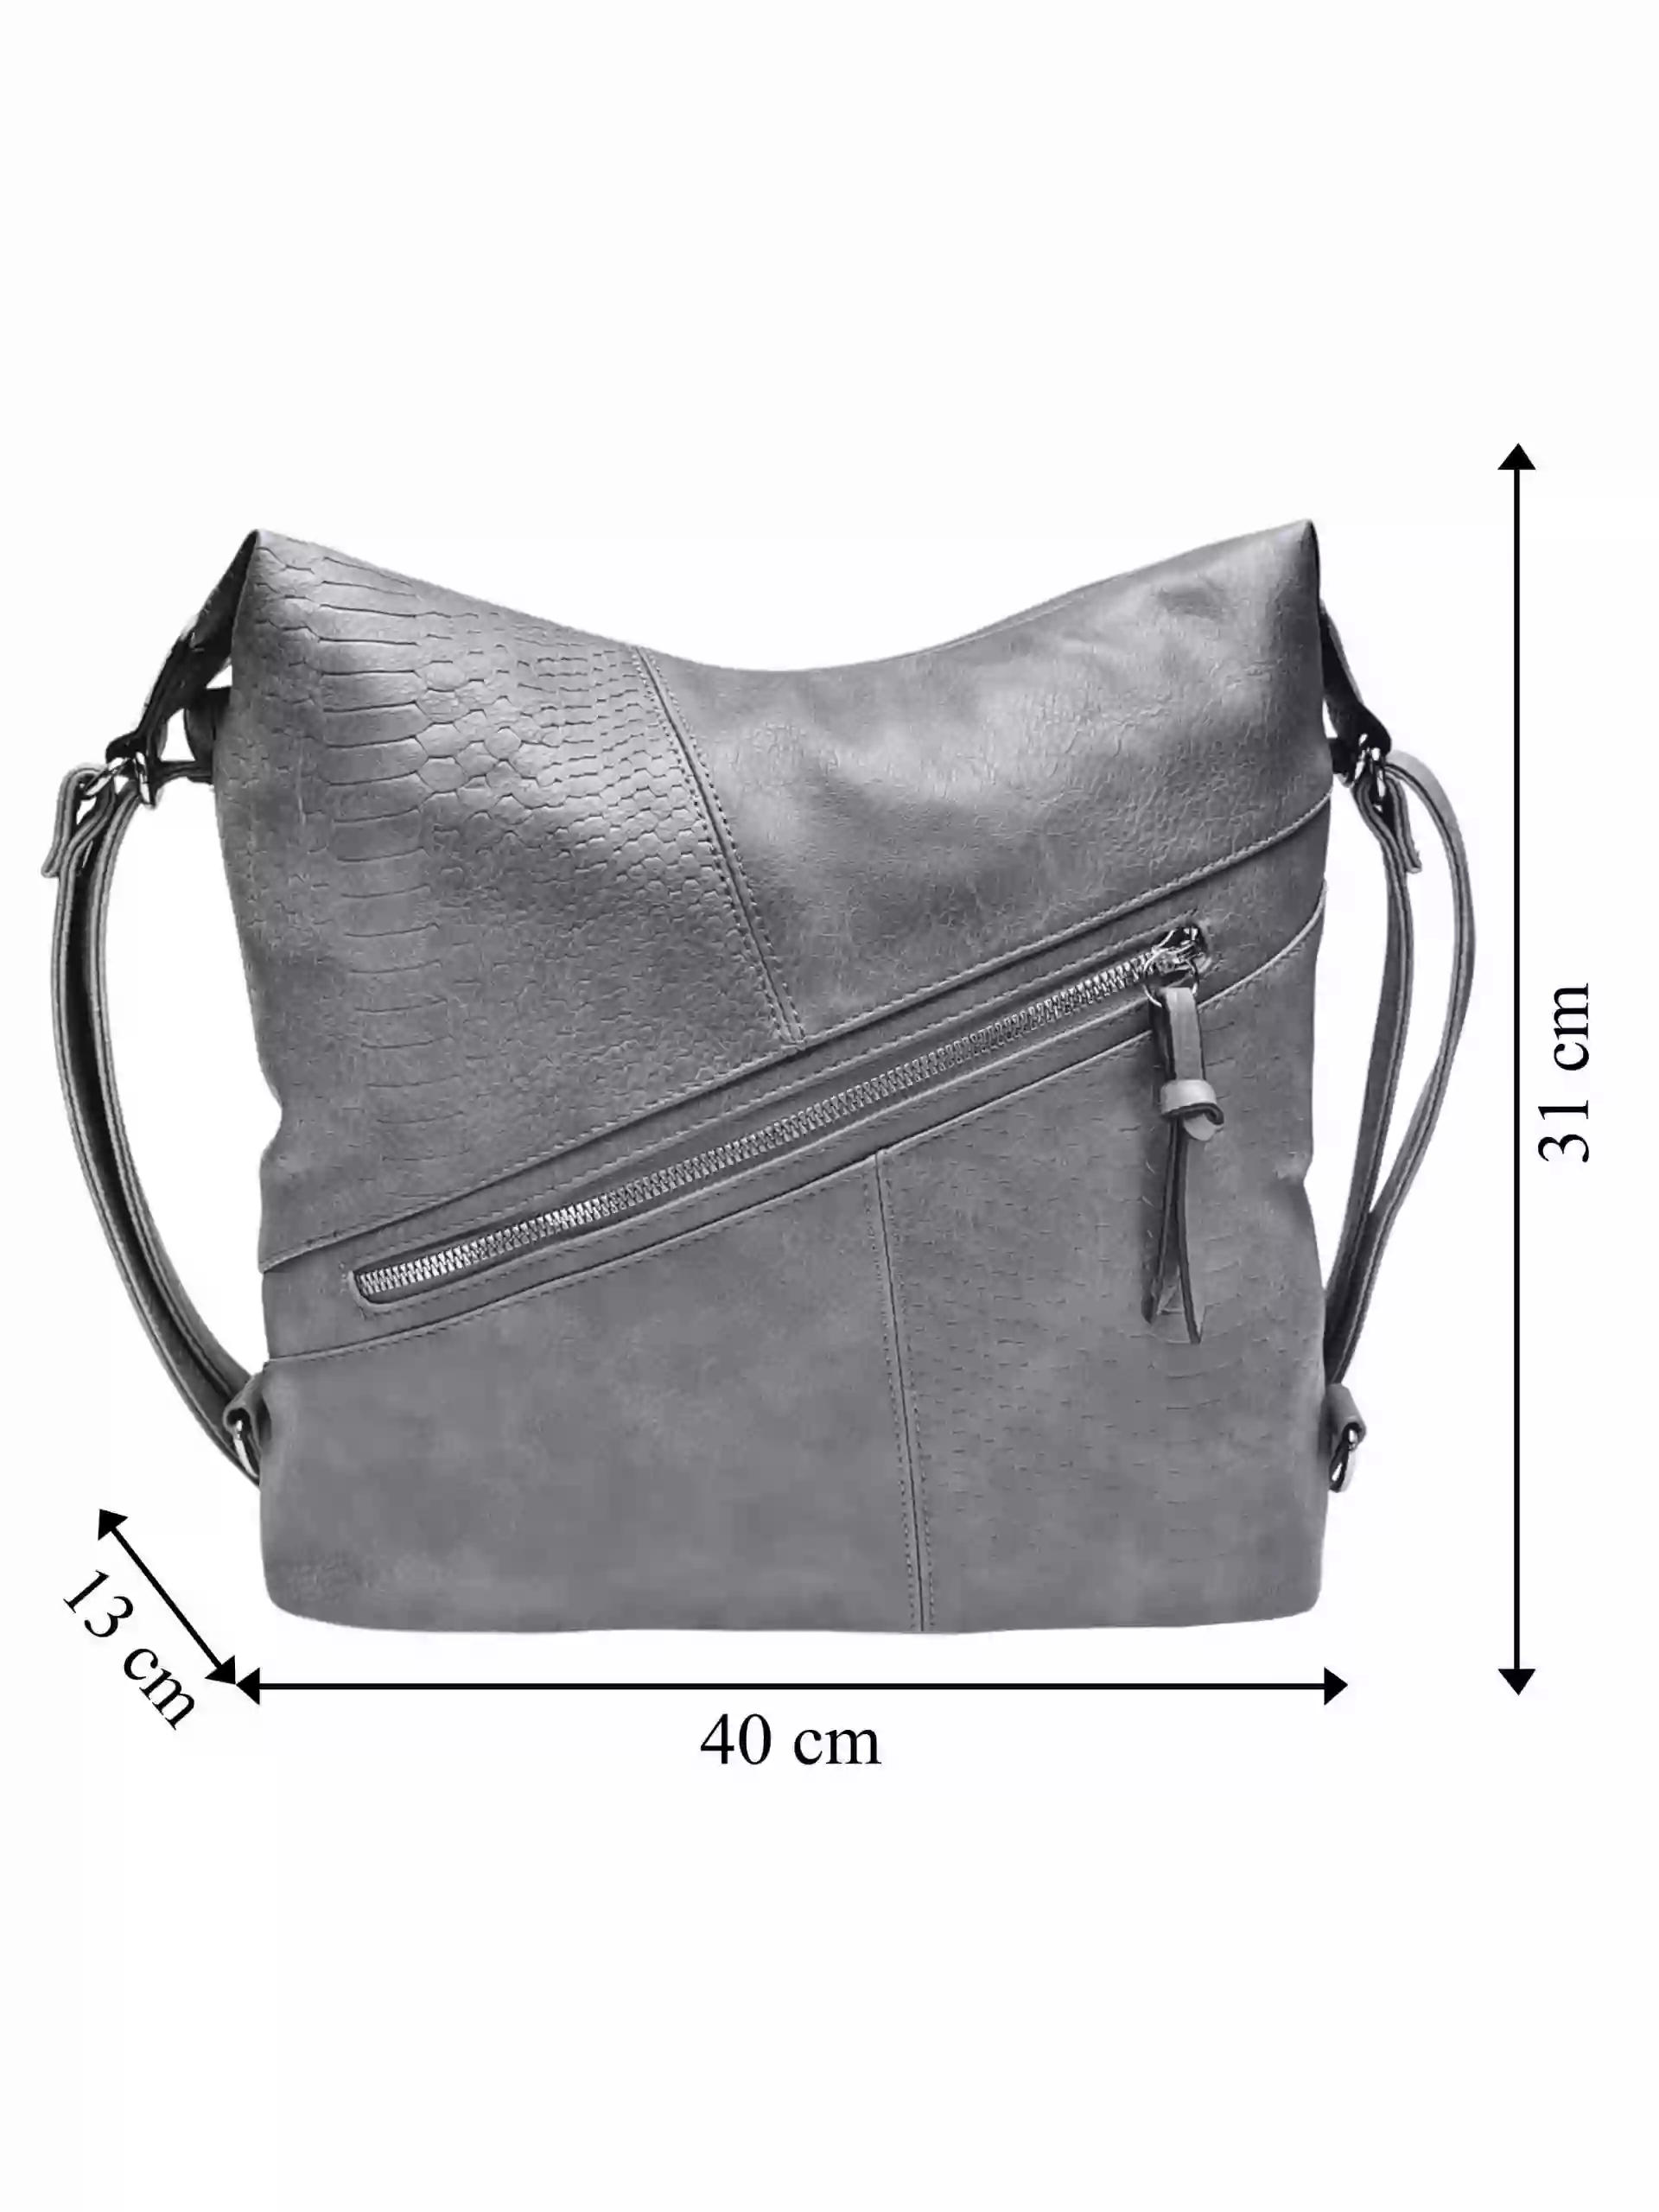 Velký středně šedý kabelko-batoh z eko kůže, Tapple, H18077, přední strana kabelko-batohu 2v1 s rozměry